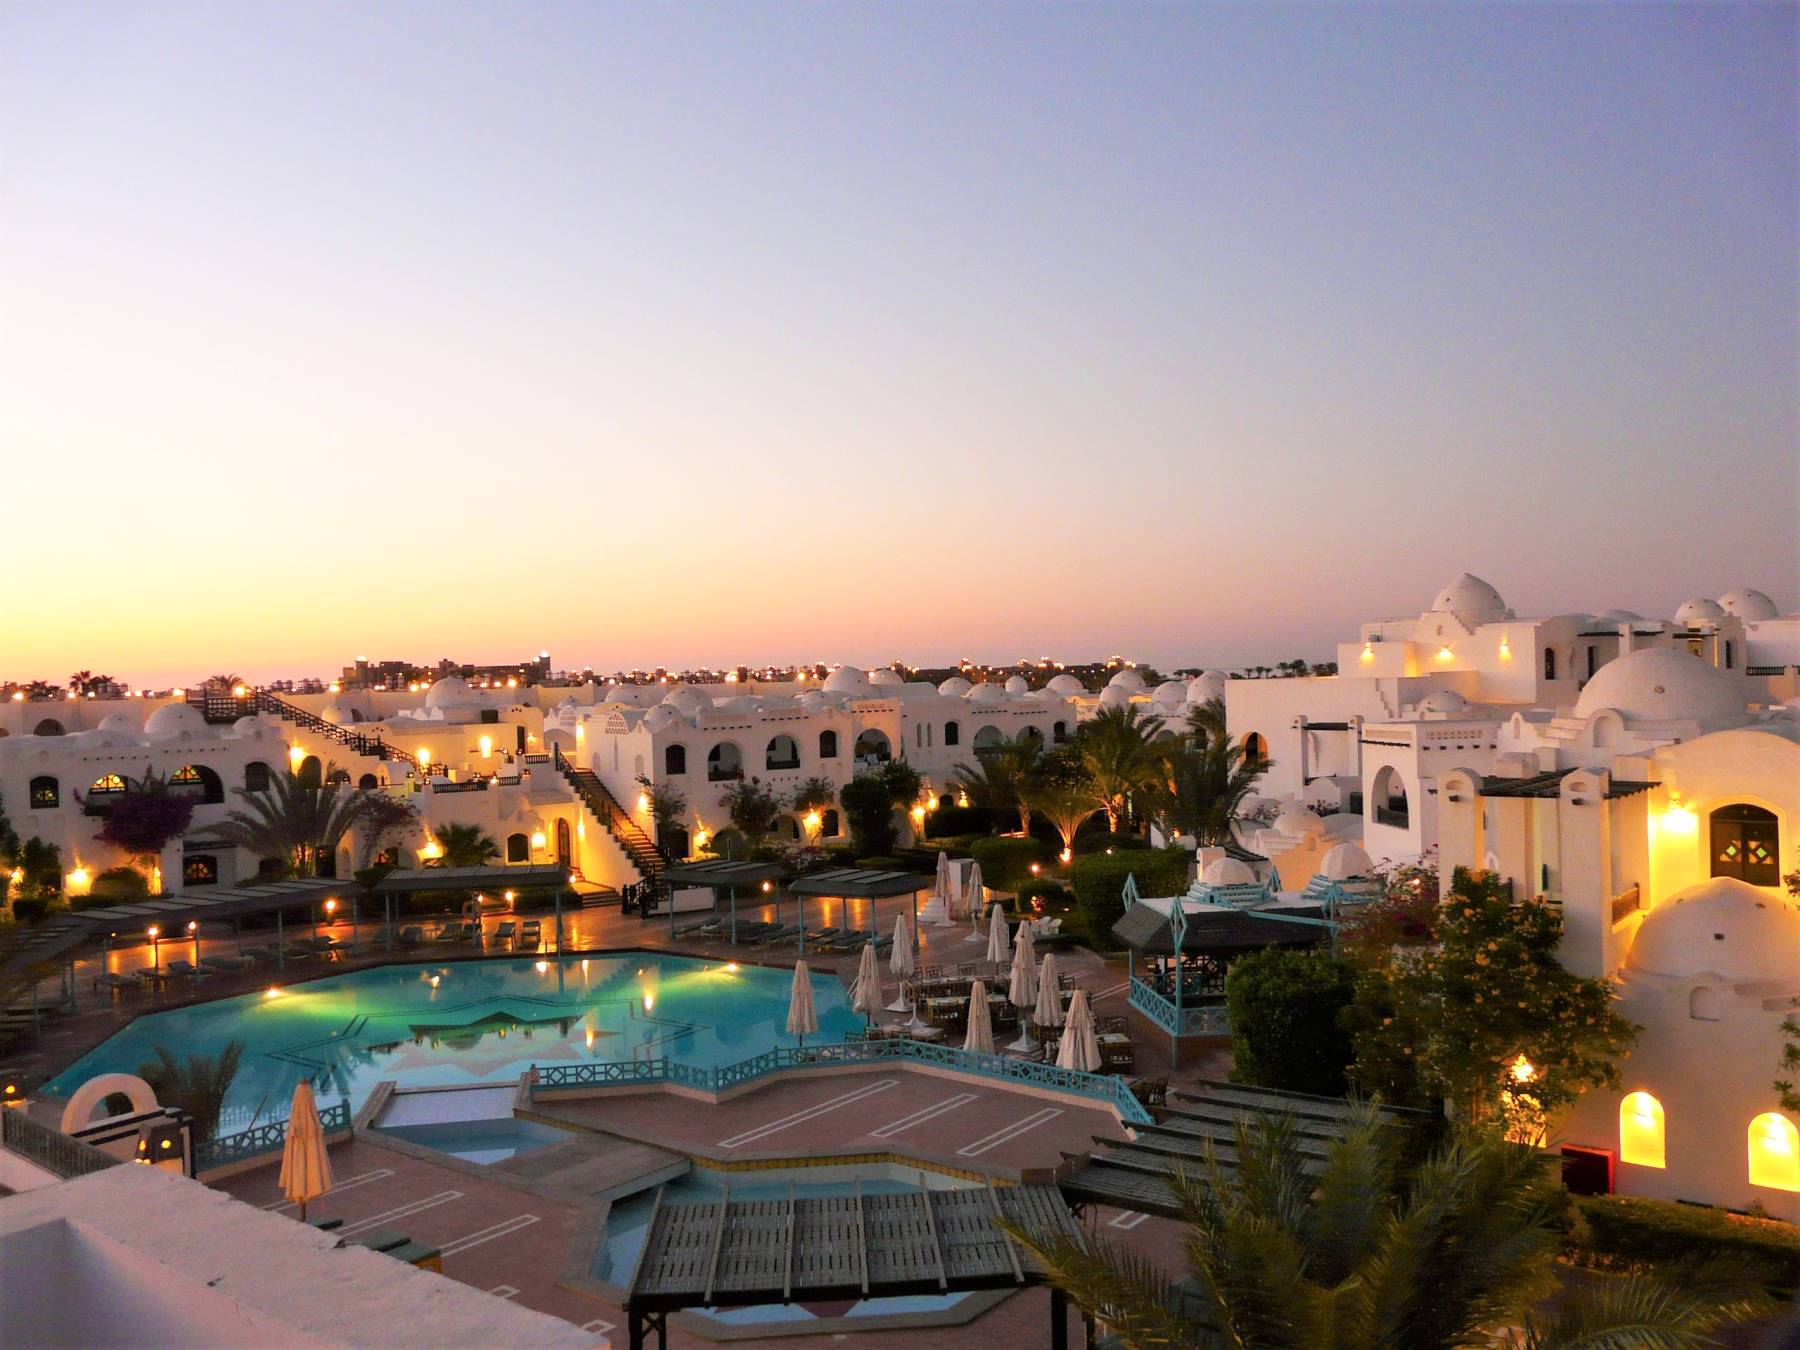 De Bedste Oplevelser i Hurghada om Aftenen - Rejs Dig Lykkelig